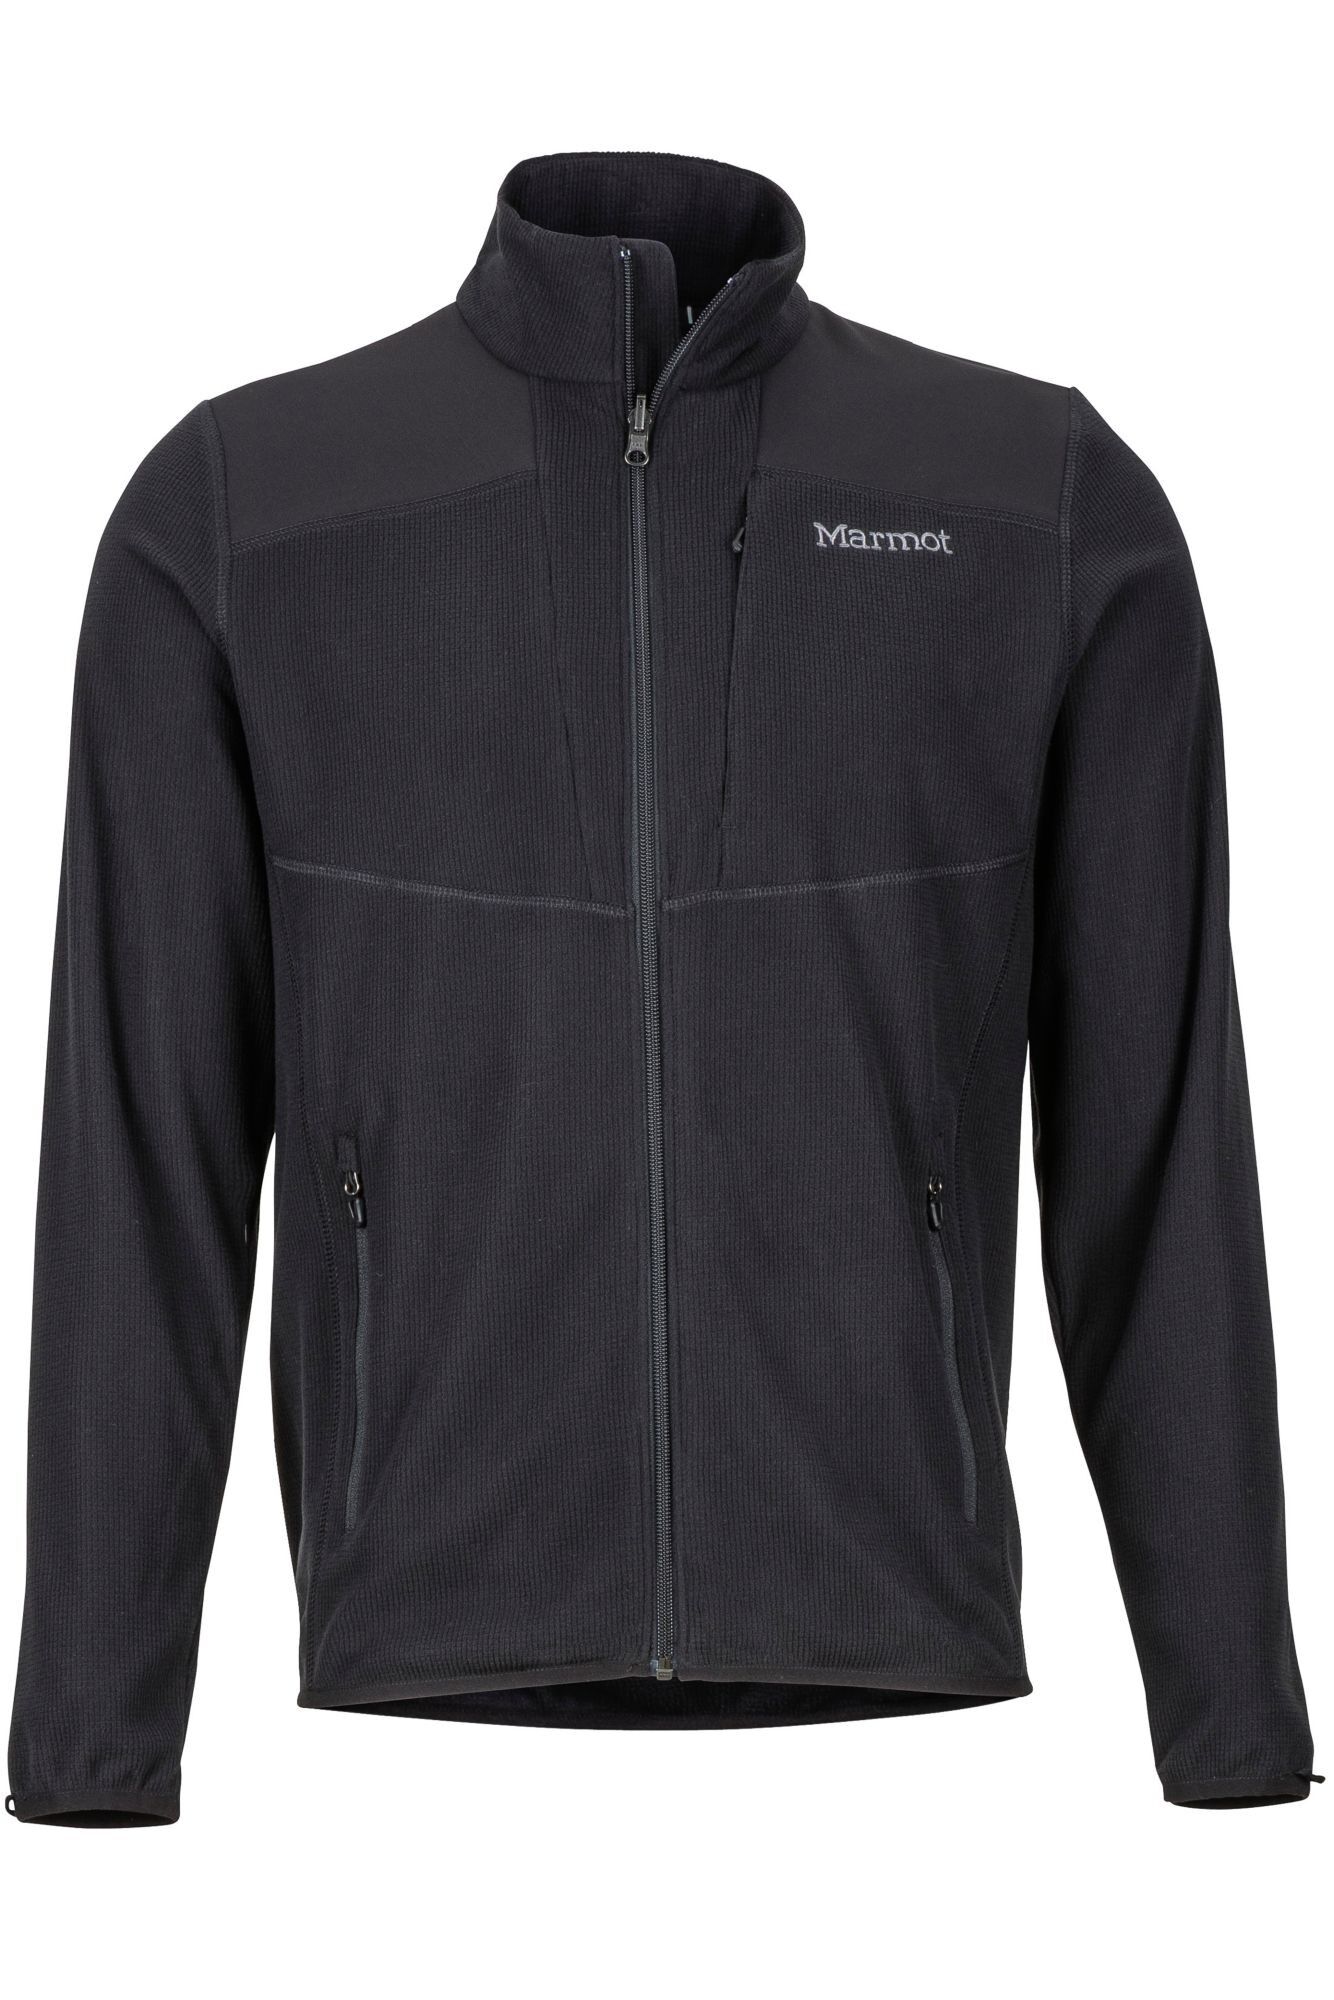 Marmot Reactor Jacket - Fleece jacket - Men's